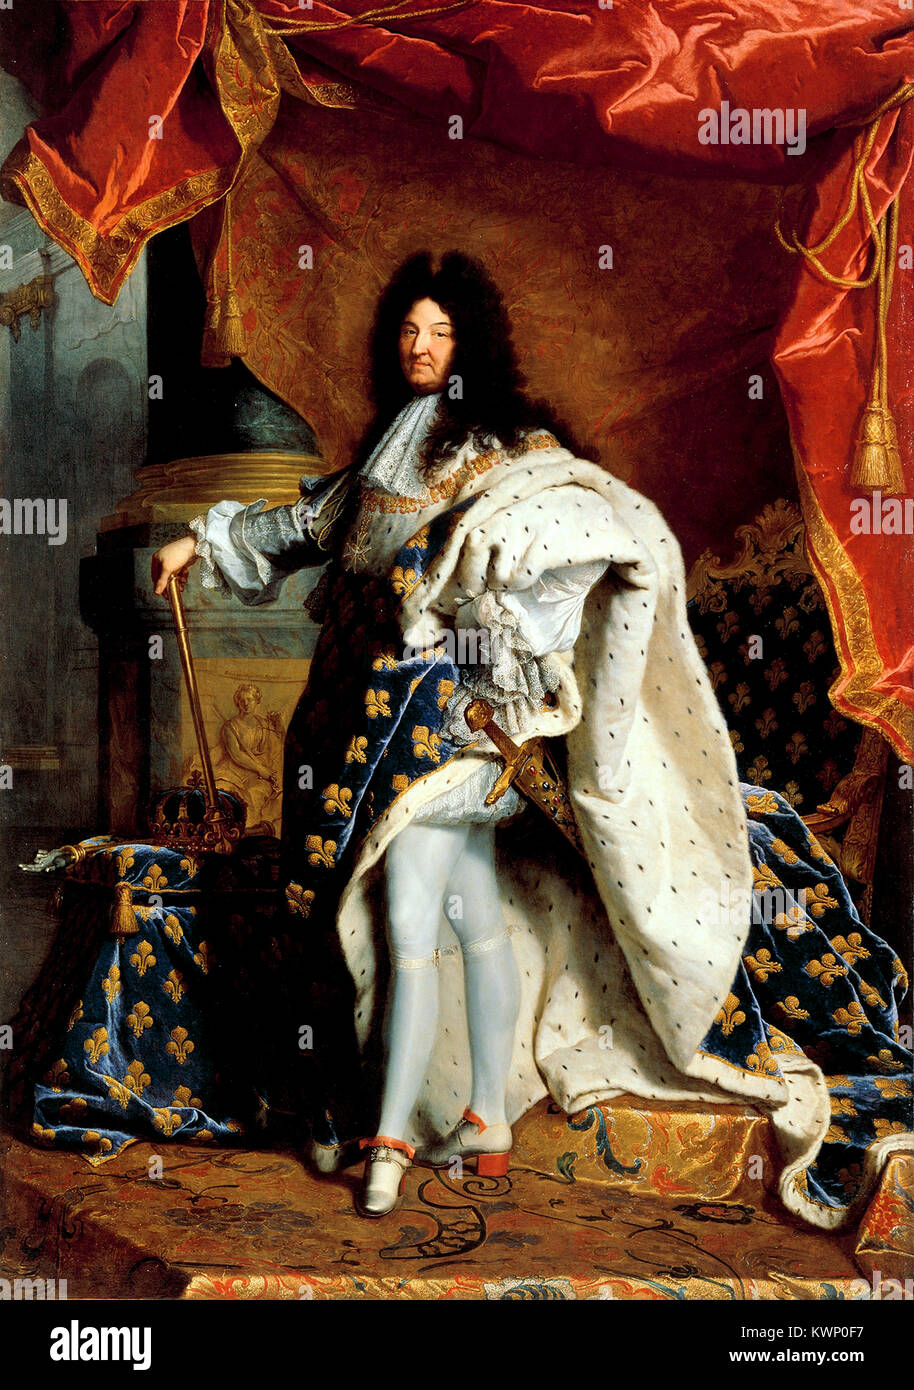 Louis XIV de France Louis XIV (5 septembre 1638 - 1 septembre 1715), régna comme roi de France de 1643 jusqu'à 1715 Banque D'Images